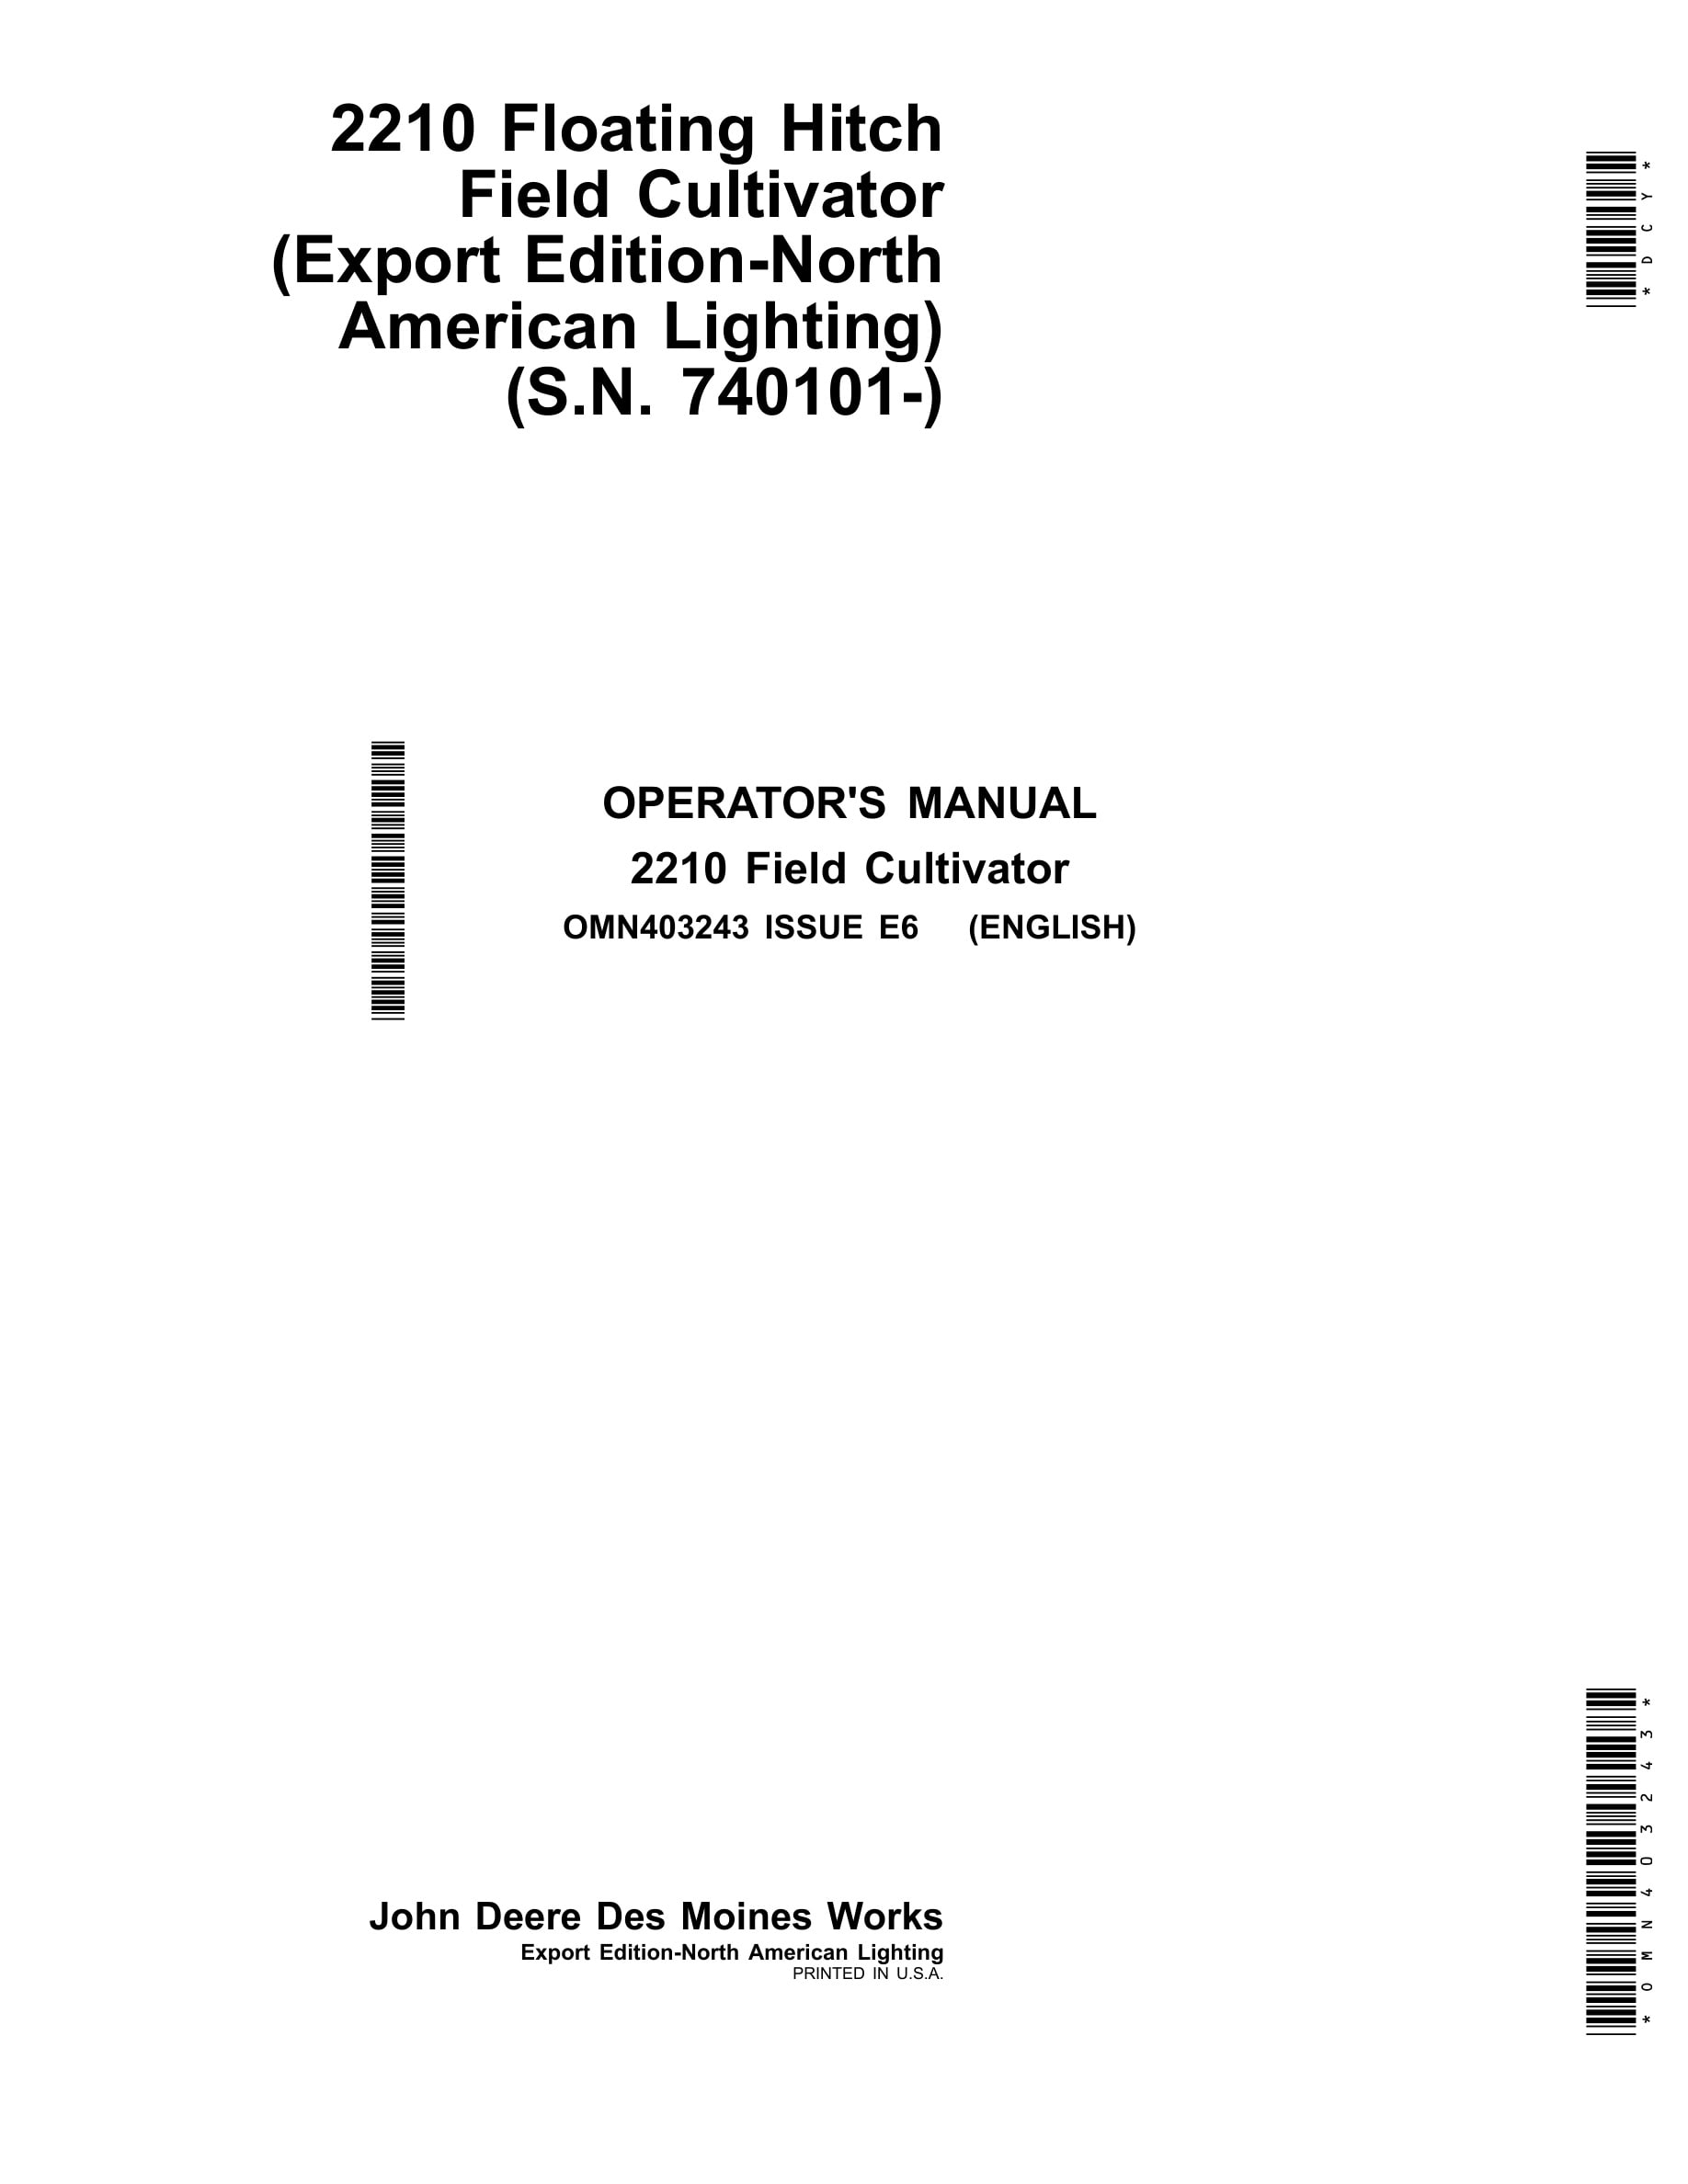 John Deere 2210 Floating Hitch Field Cultivator Operator Manual OMN403243-1